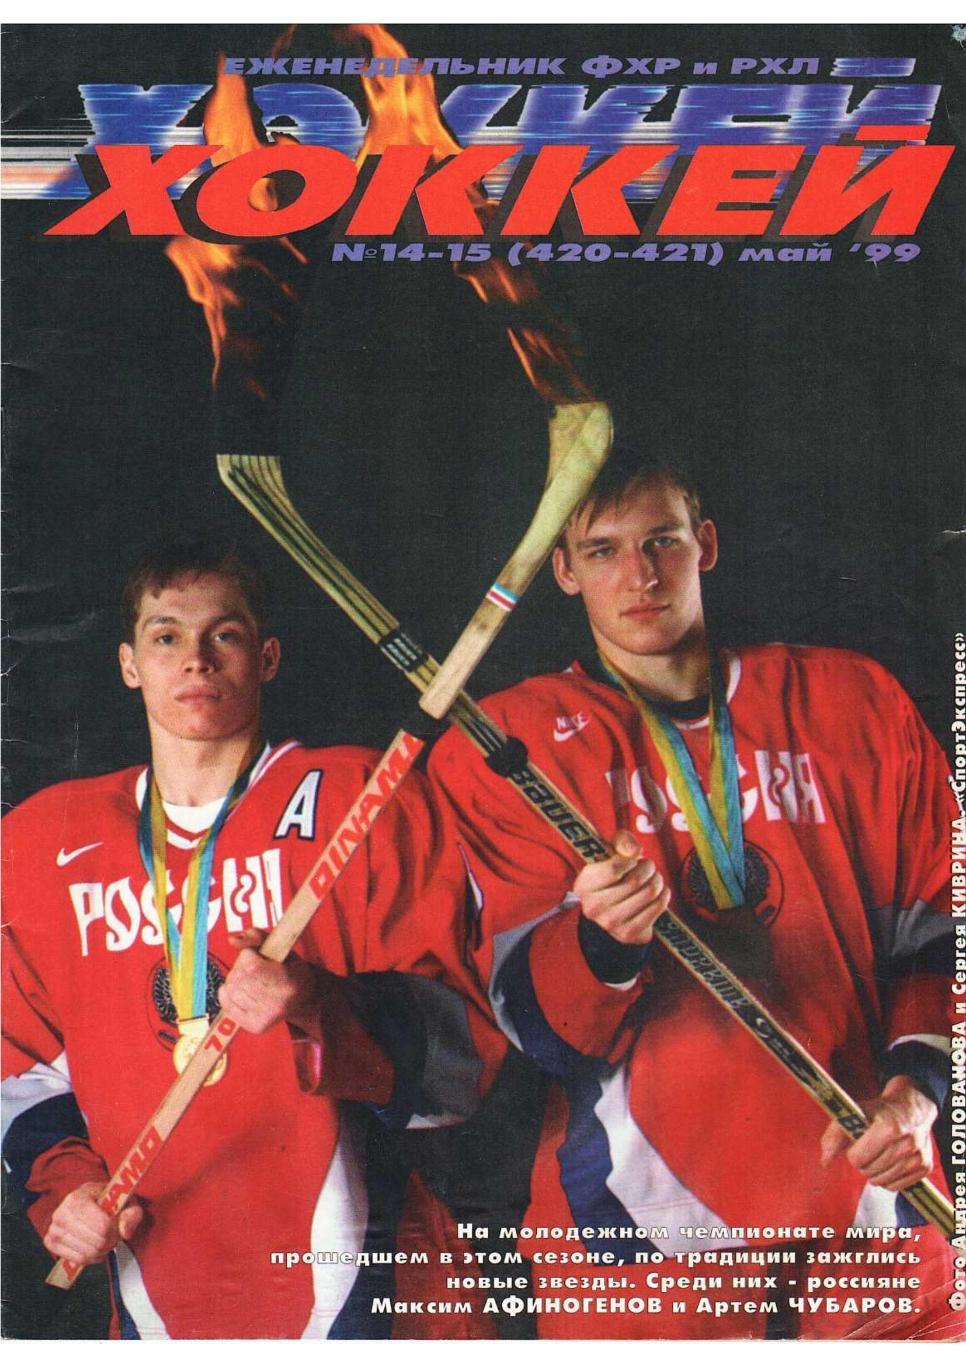 Хоккей. Еженедельник ФХР и РХЛ. № 14–15. Май 1999 г.